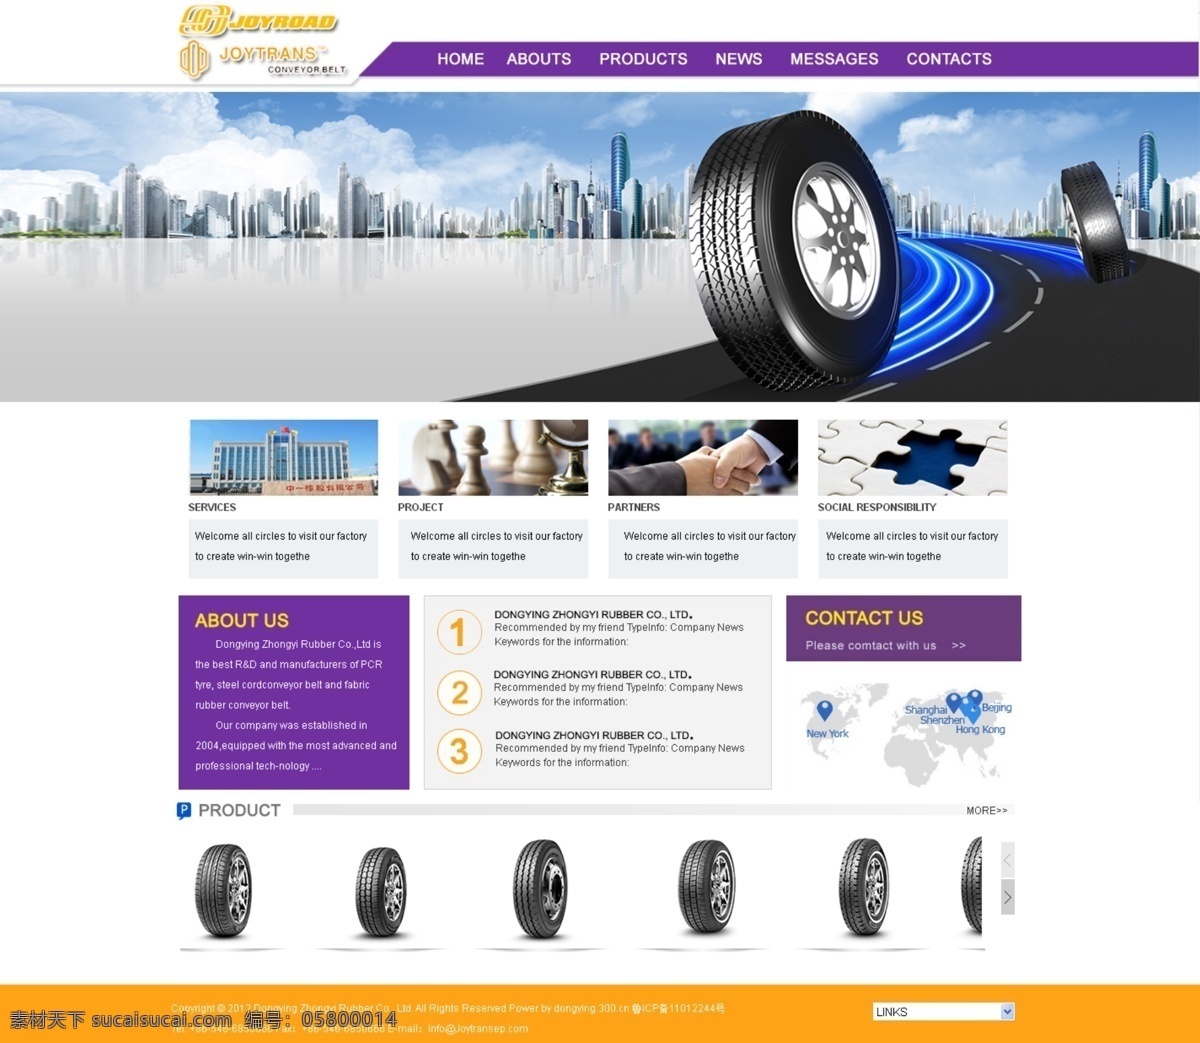 轮胎企业站 模板psd 分层素材 紫色网站模板 网站导航条 网页设计素材 精美企业站 国外优秀 网站模板 web 界面设计 英文模板